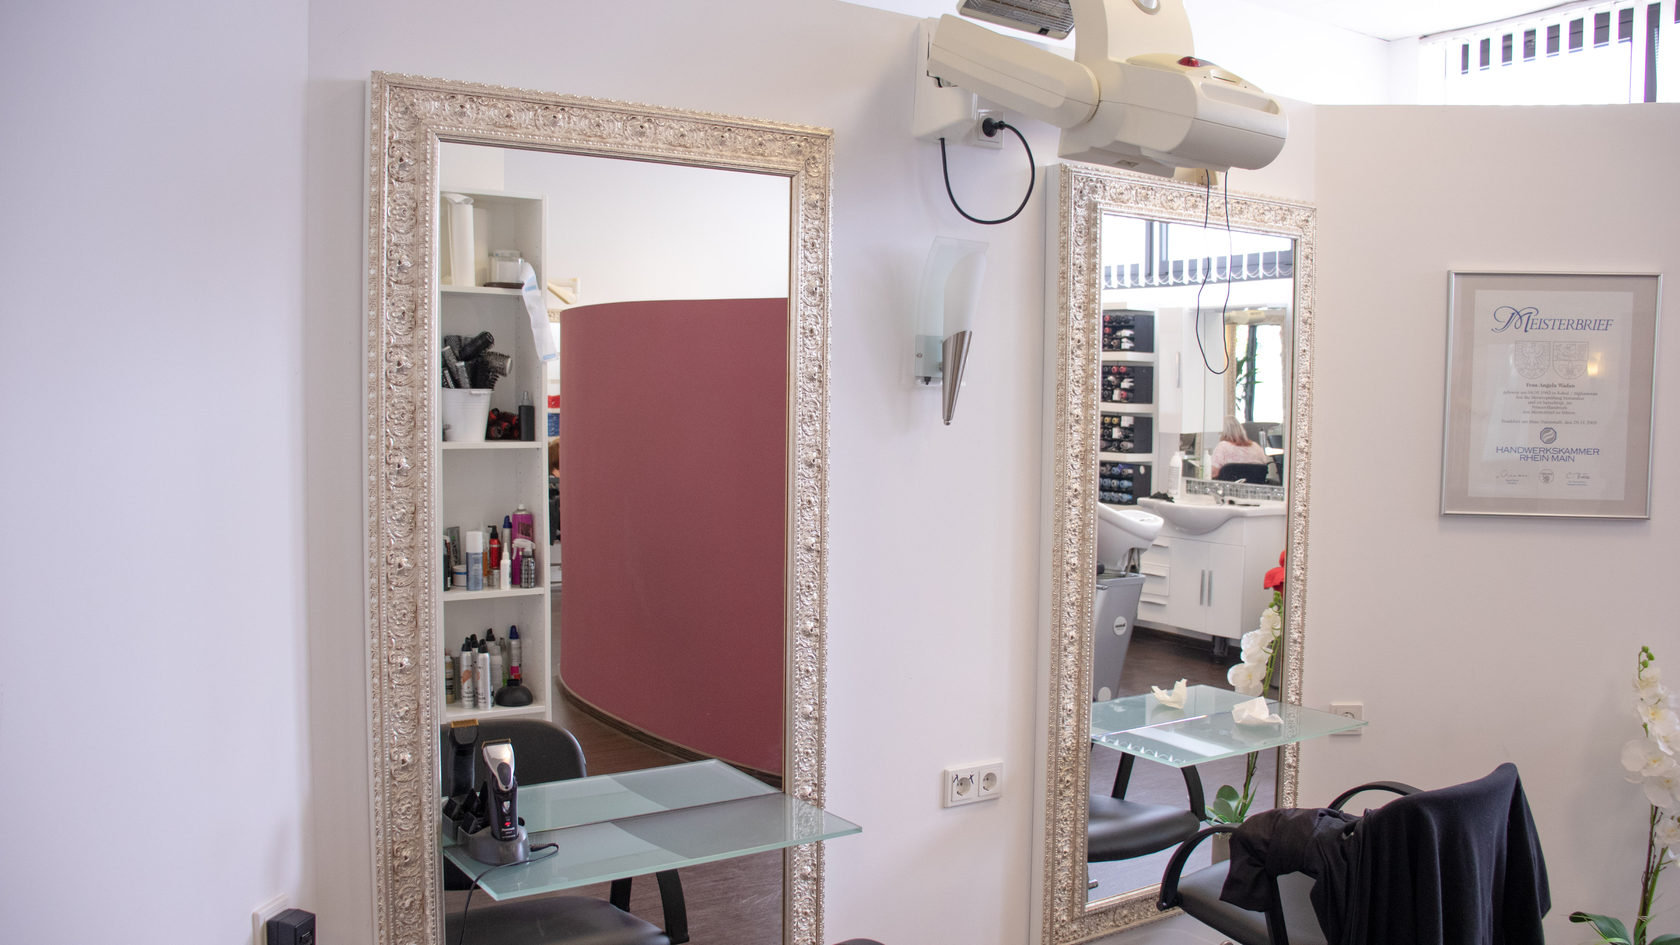 Kundenbild groß 1 Angela's Hairstylisten Weber & Co. GmbH